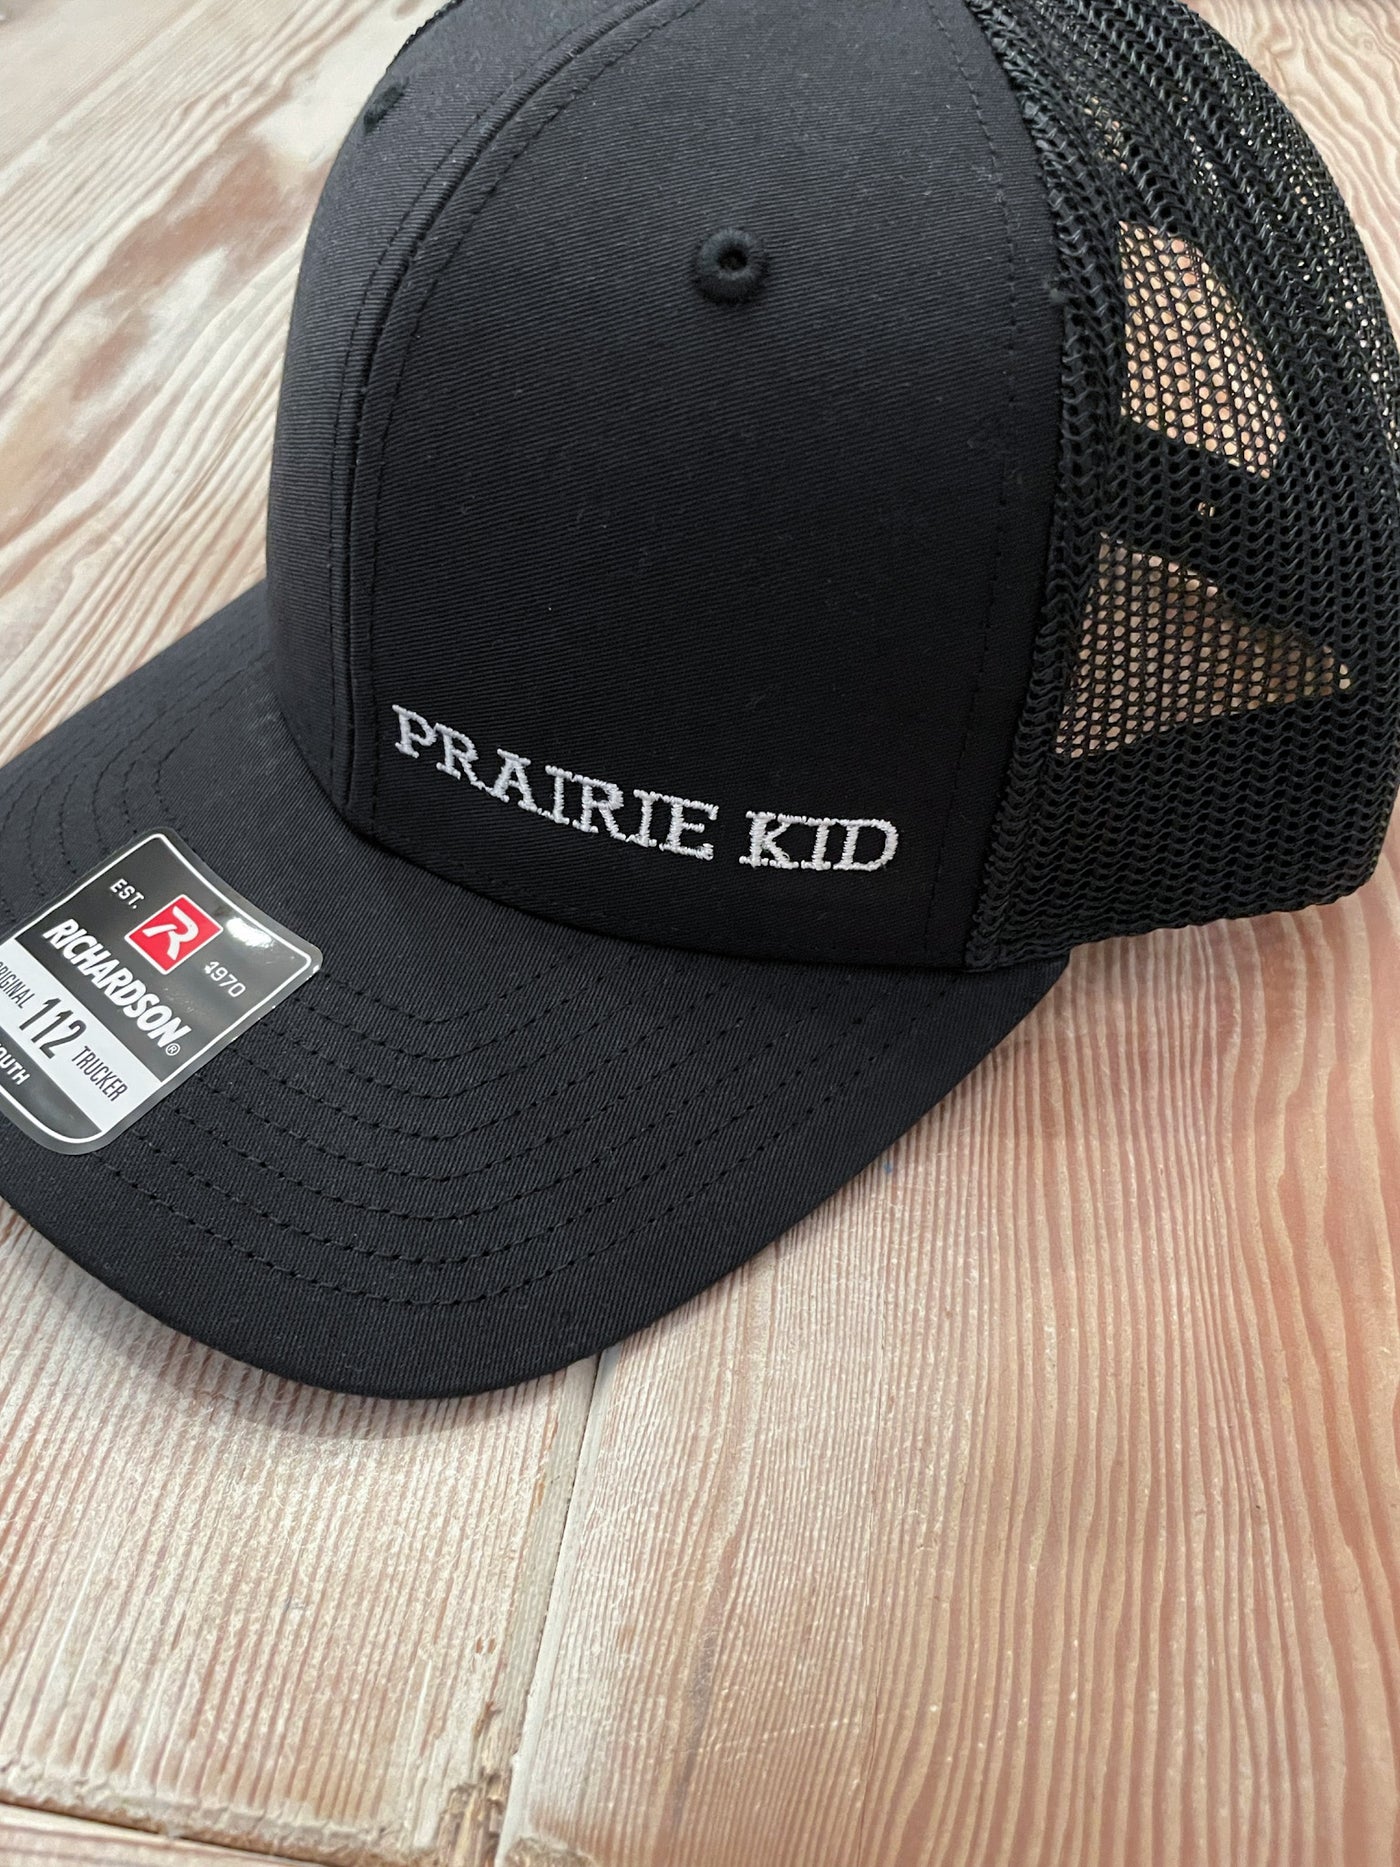 Prairie Kid snap back hat